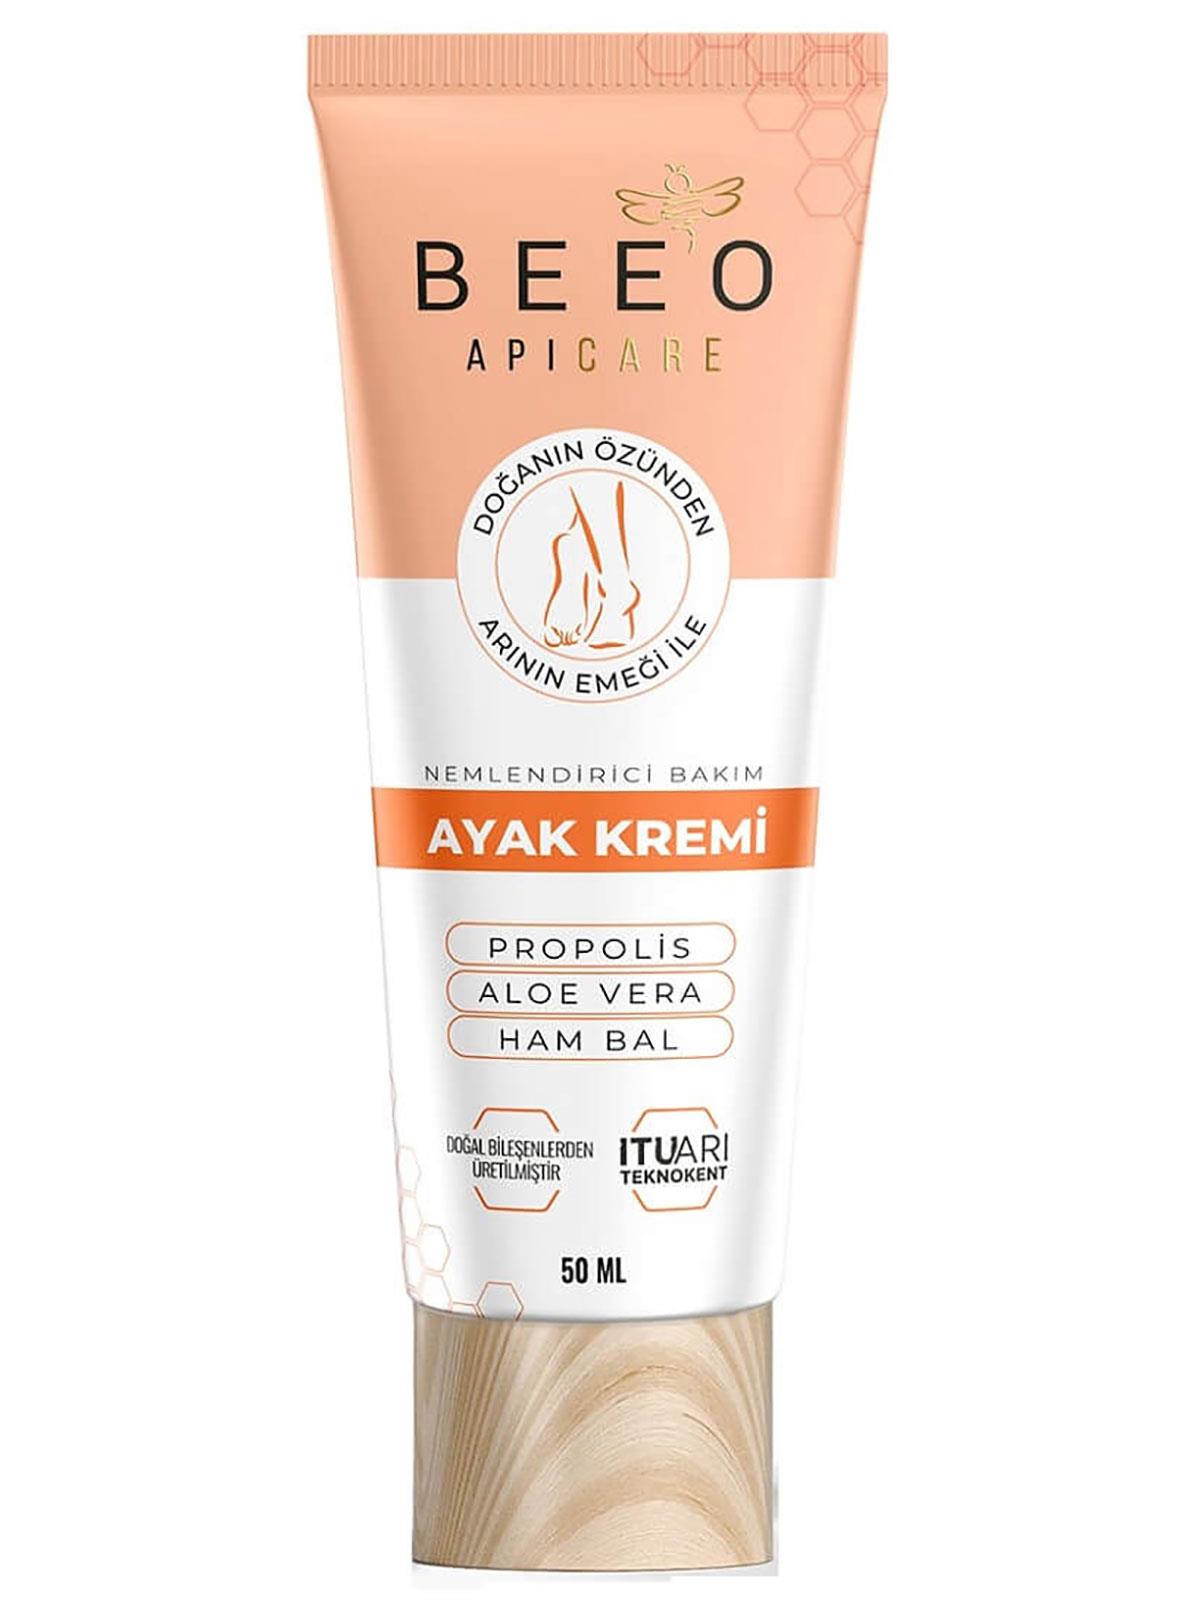 BEE’O Apicare Ayak Bakım Kremi 50 ml